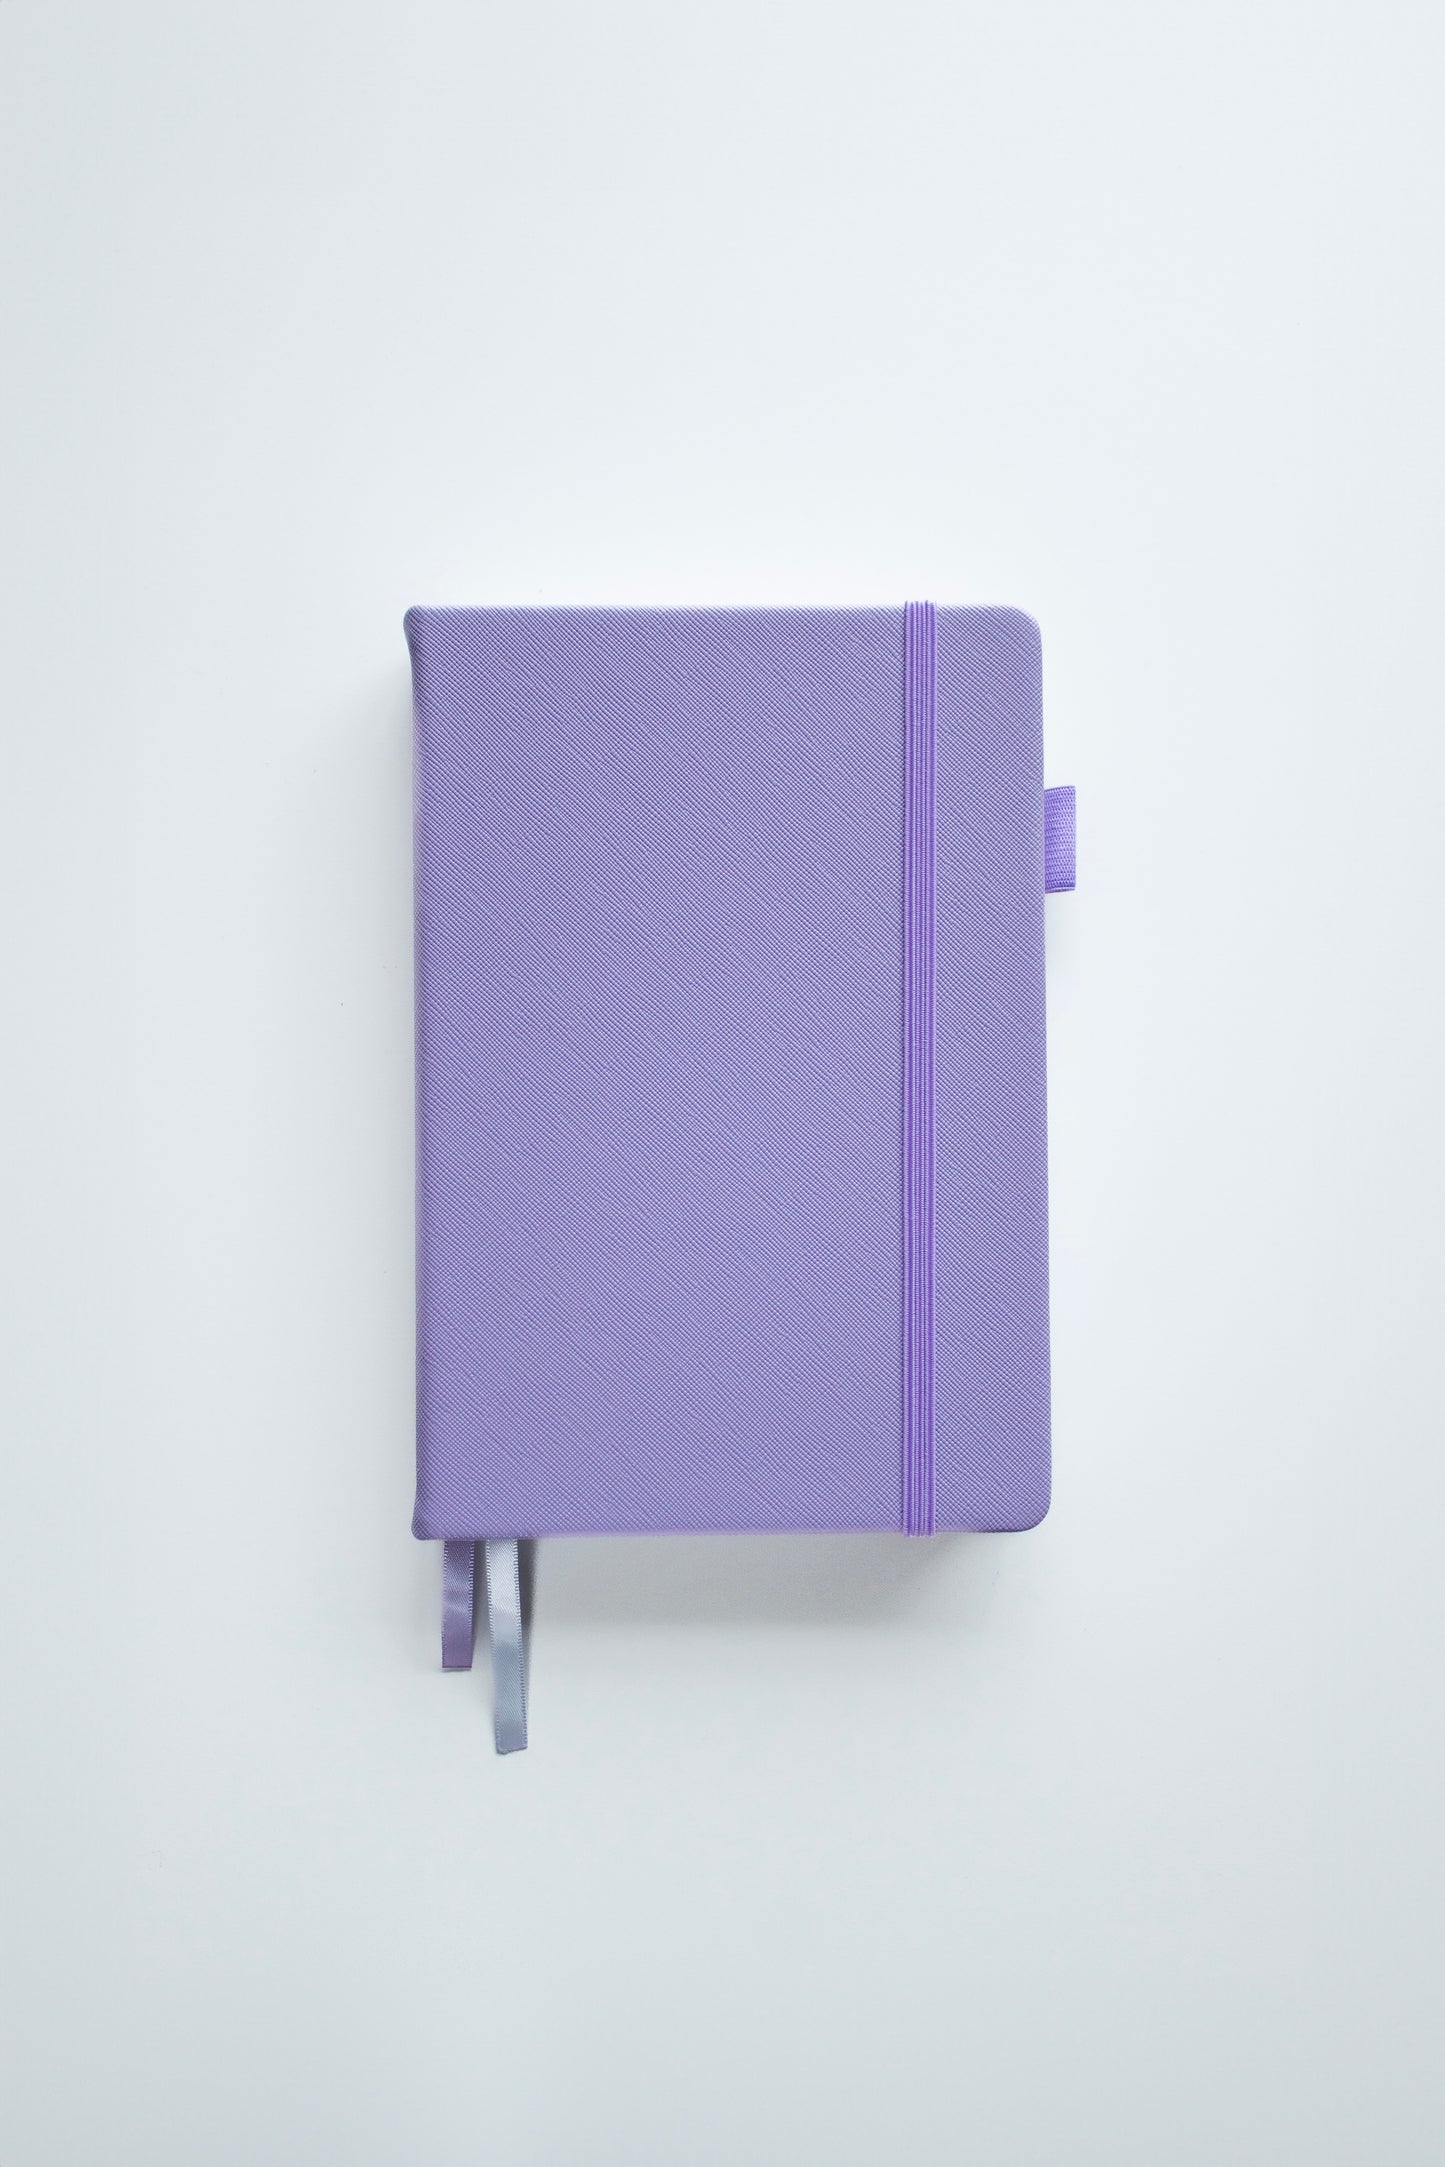 Lavender Dot Grid Notebook